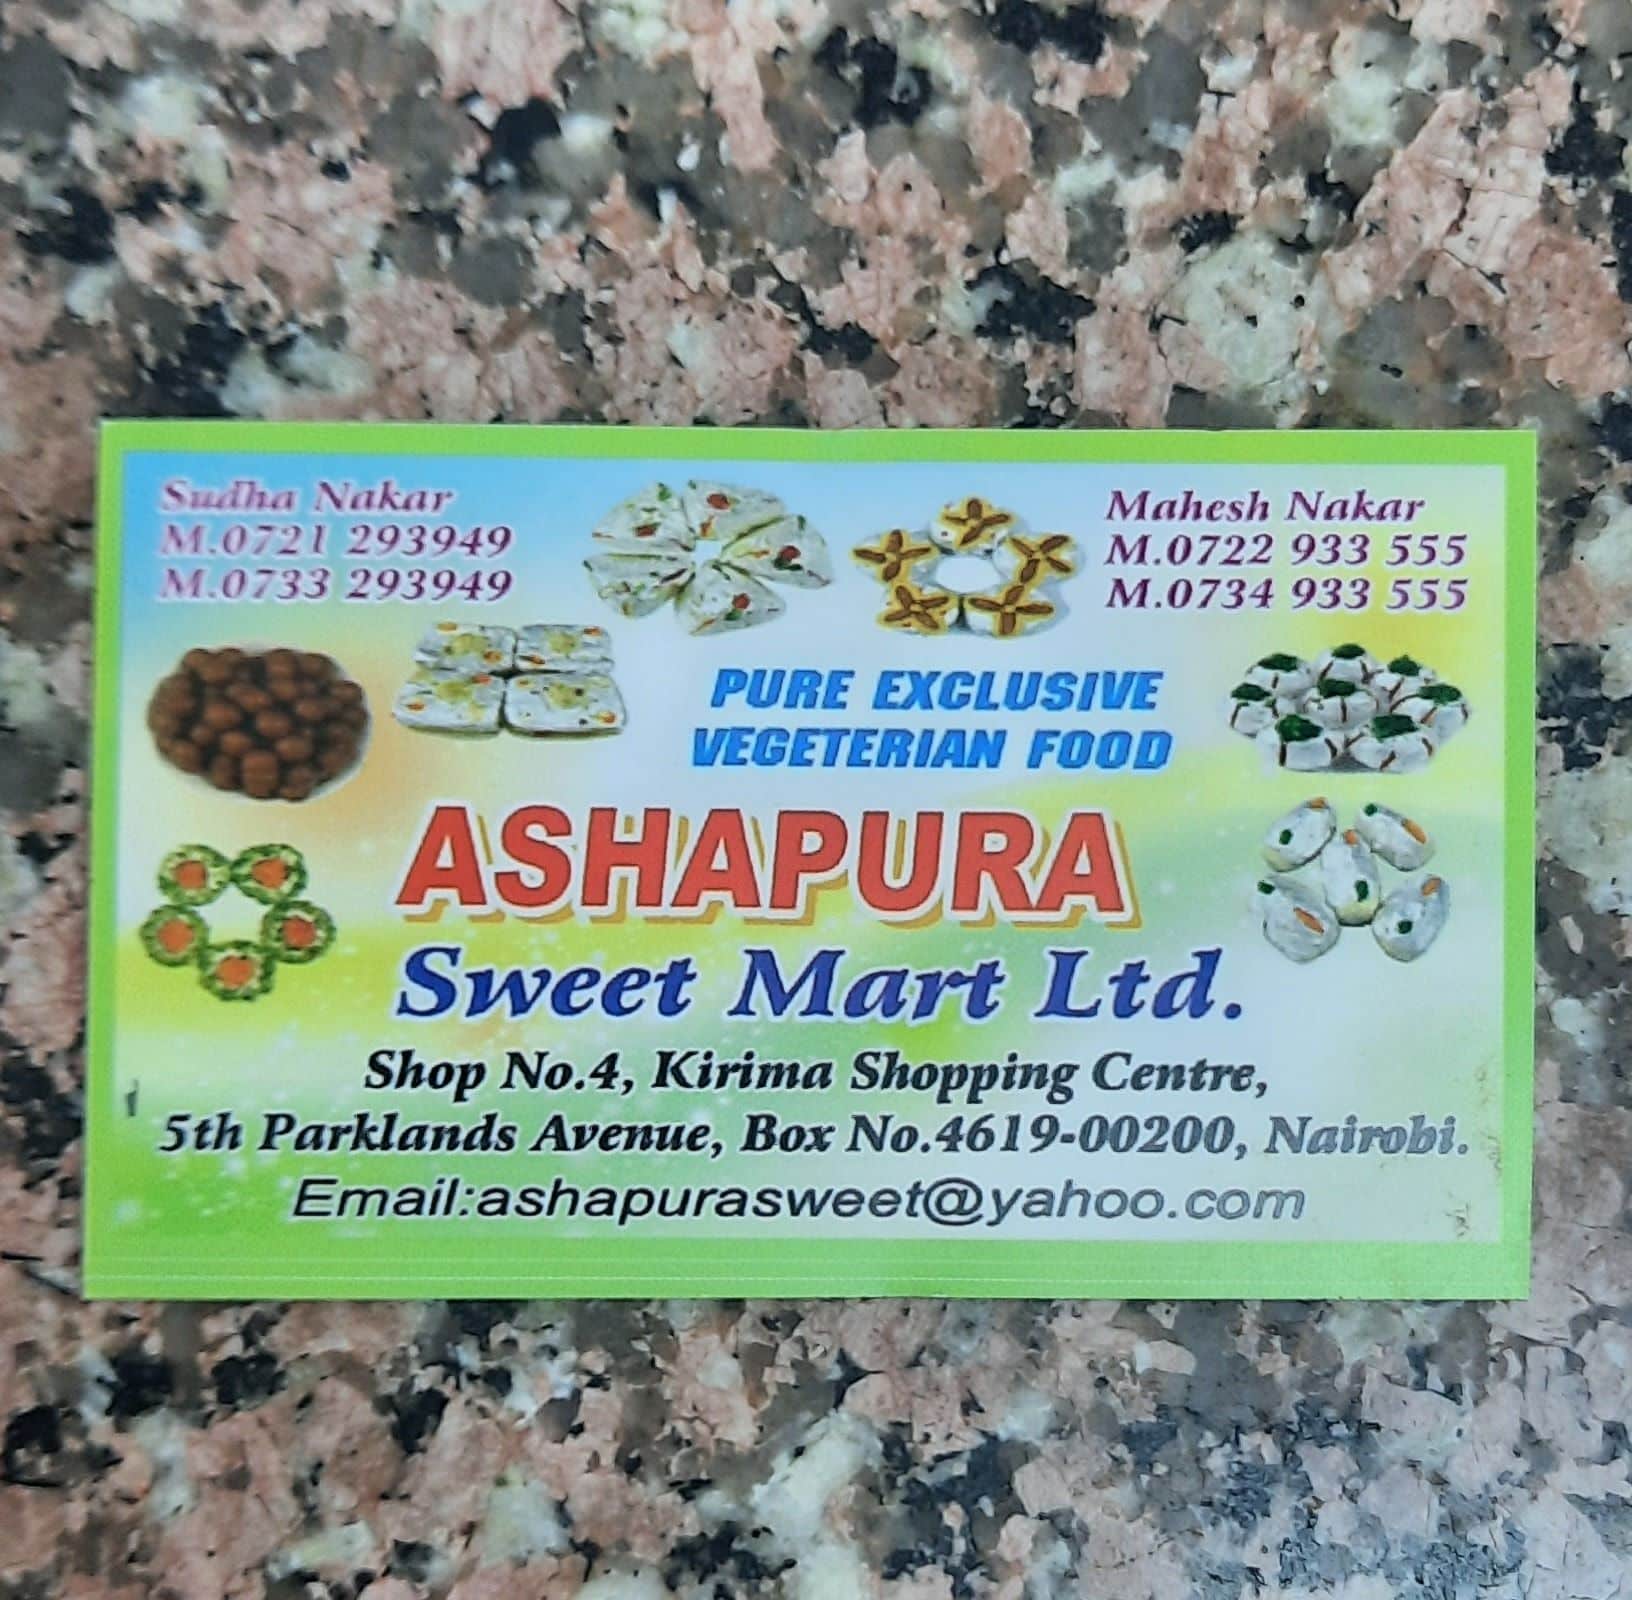 Ashapura Sweet Mart Ltd